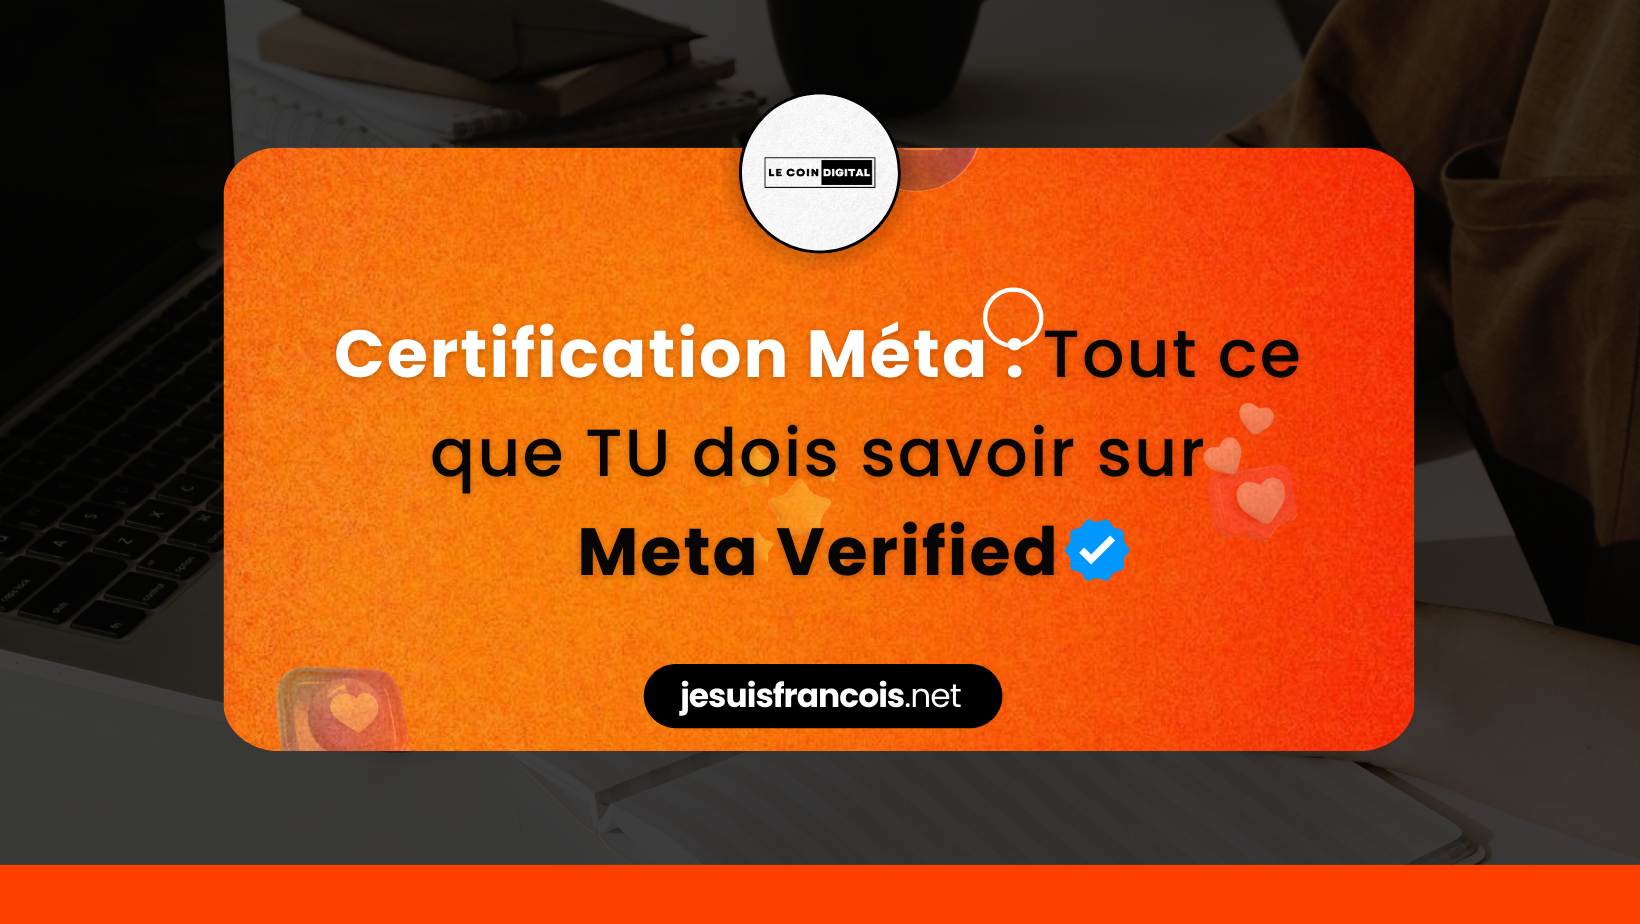 Meta verified